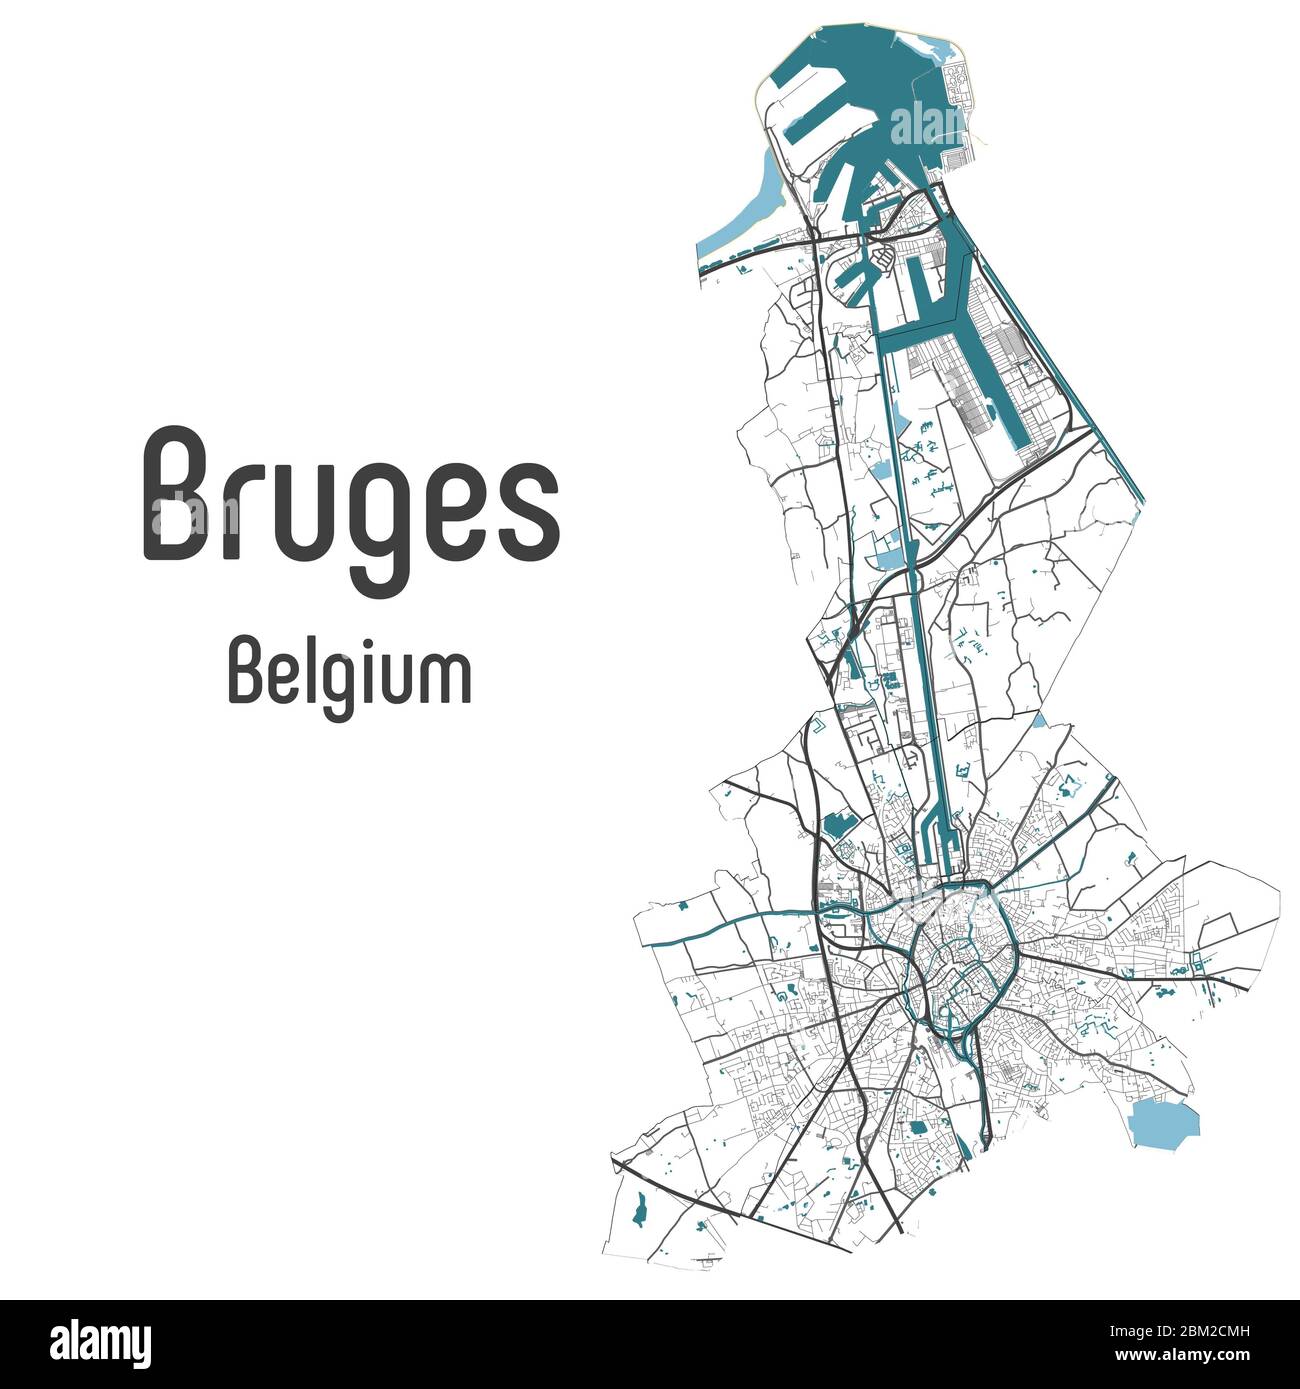 Bruges Mappa di Bruges con strade e fiumi, confini amministrativi del comune, design artistico con sfondo grigio e blu su sfondo bianco Foto Stock